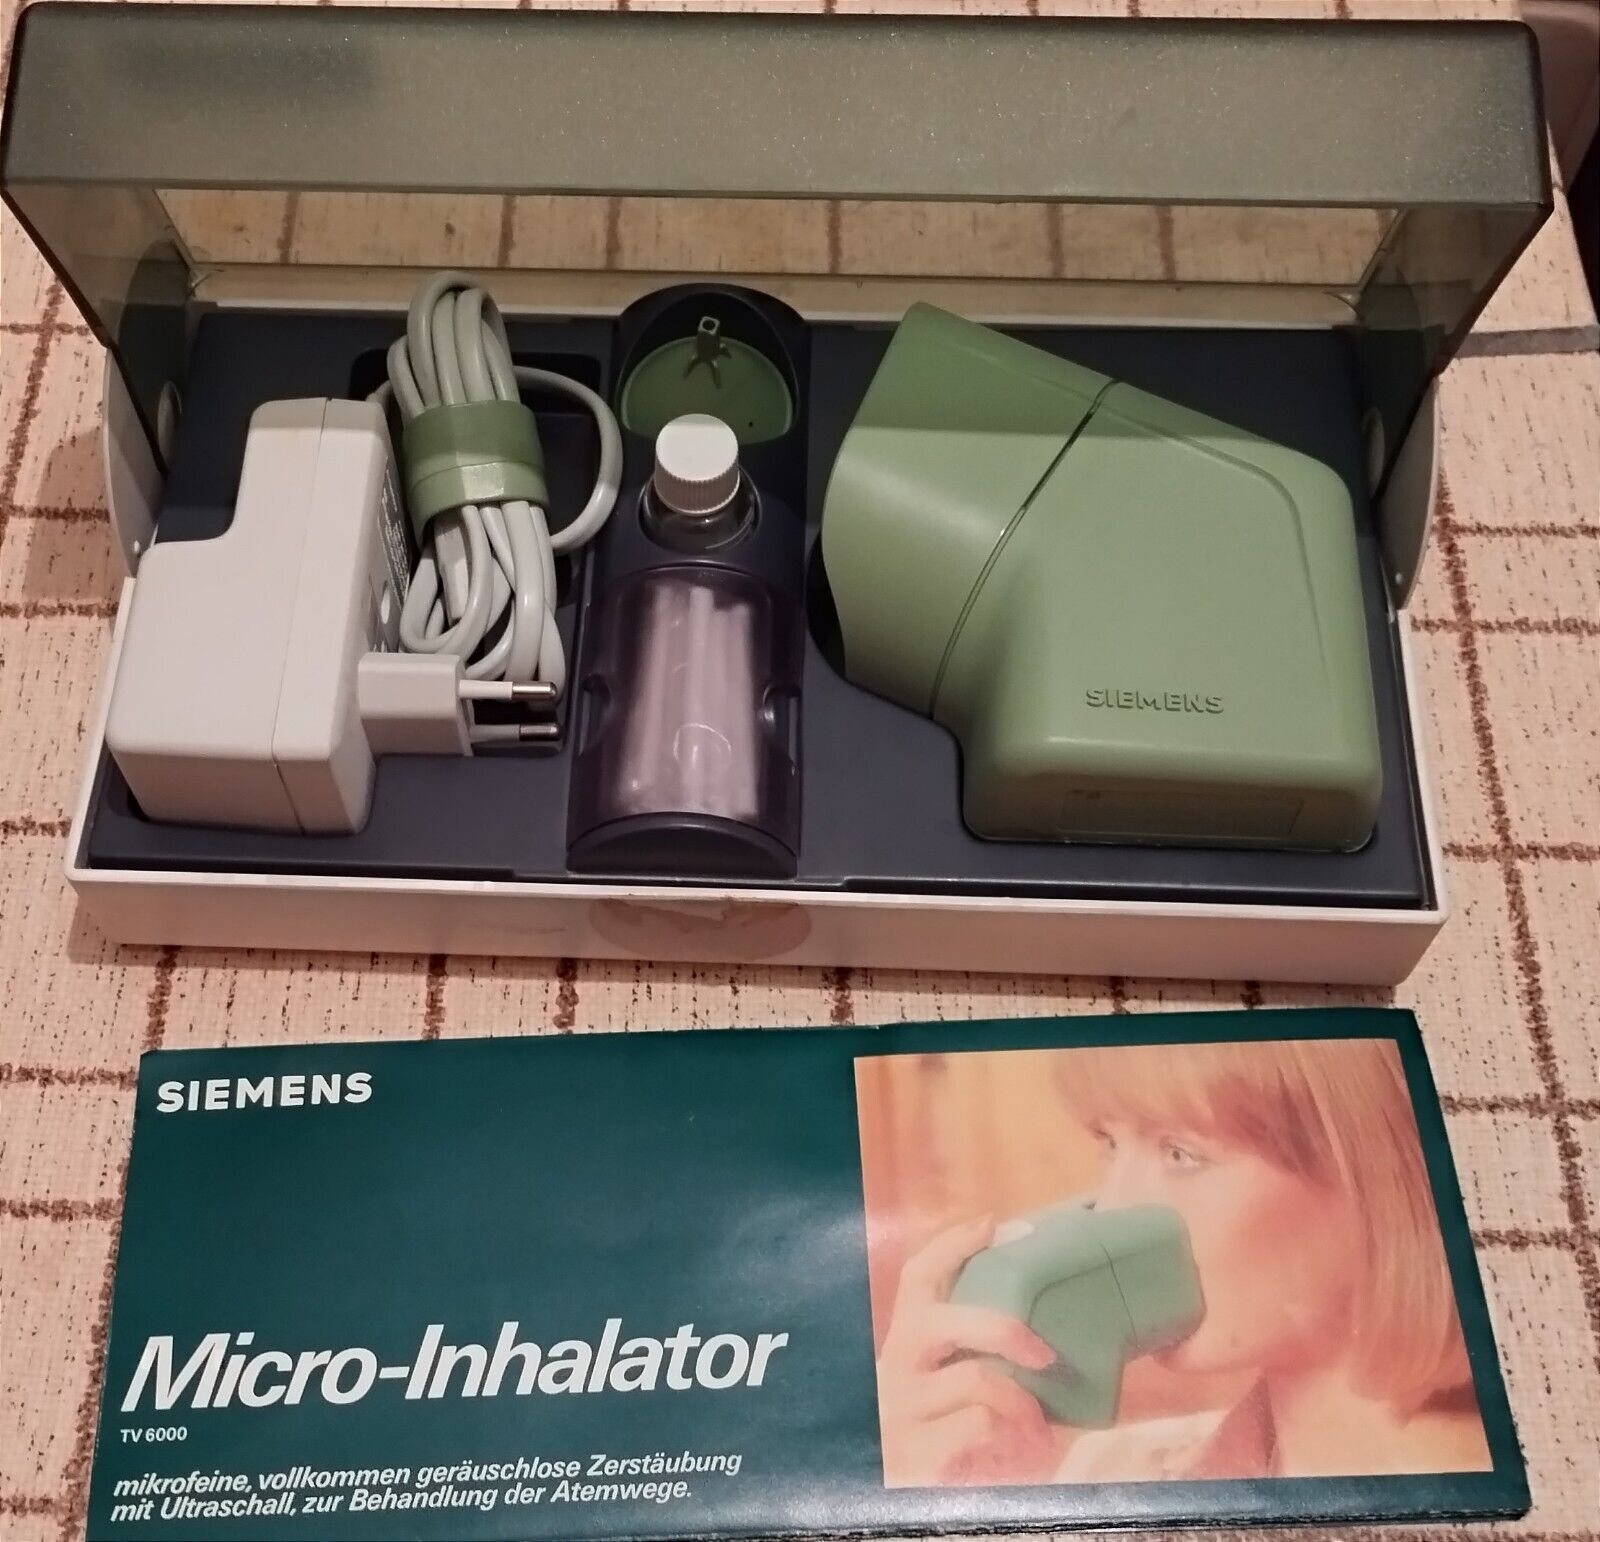 Micro-Inhalator Siemens neuwertig in Originalverpackung - nicht getestet